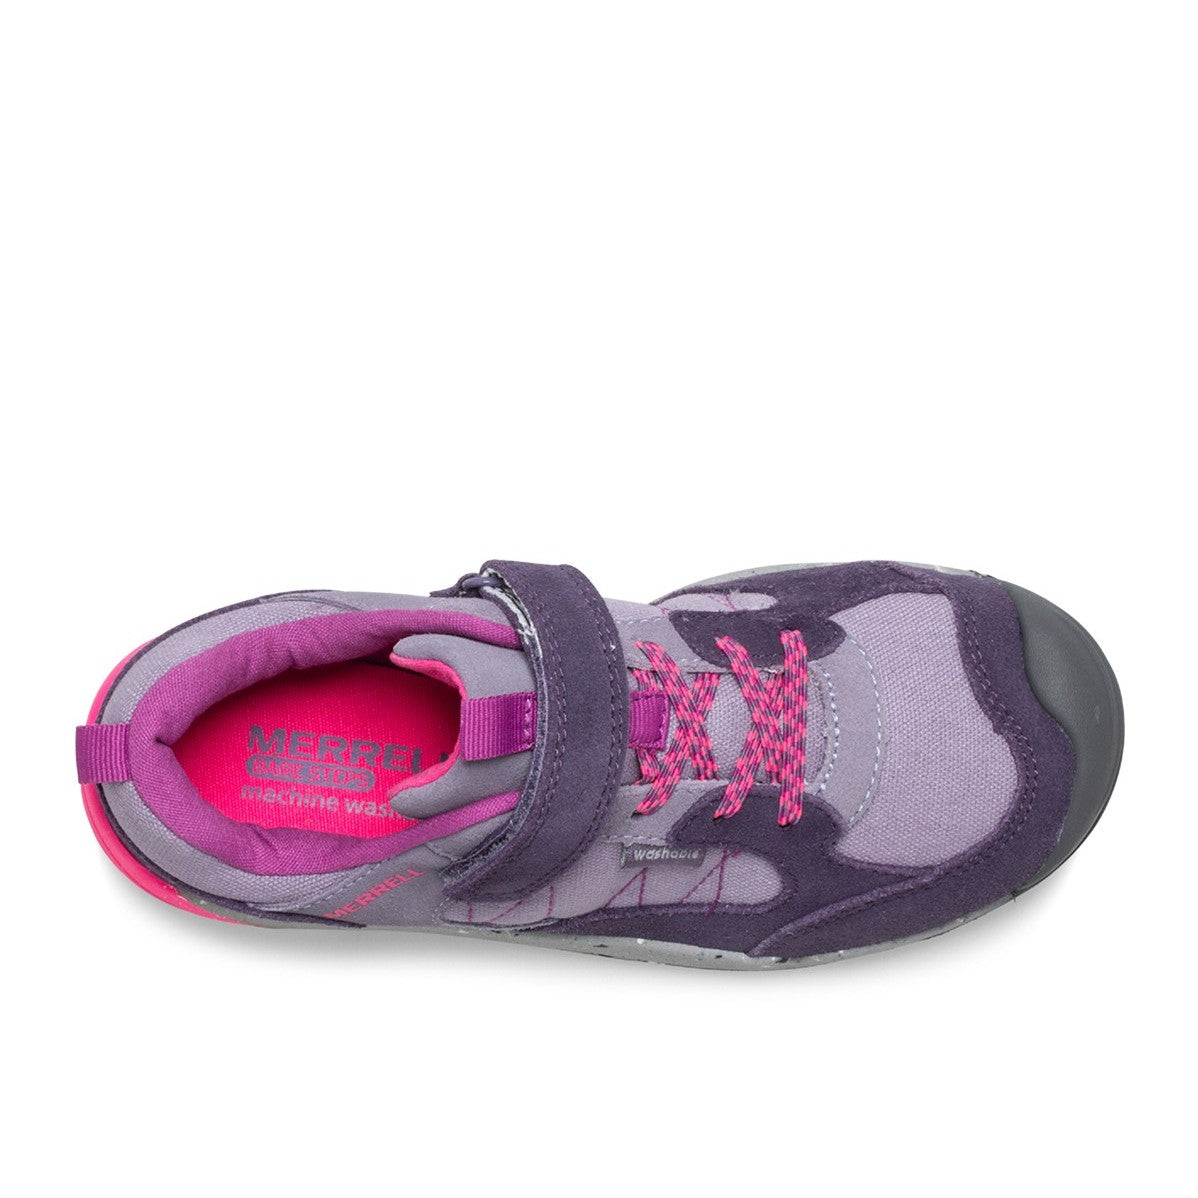 Merrell Kids Bare Steps Alpine Shoe - Dusty Purple